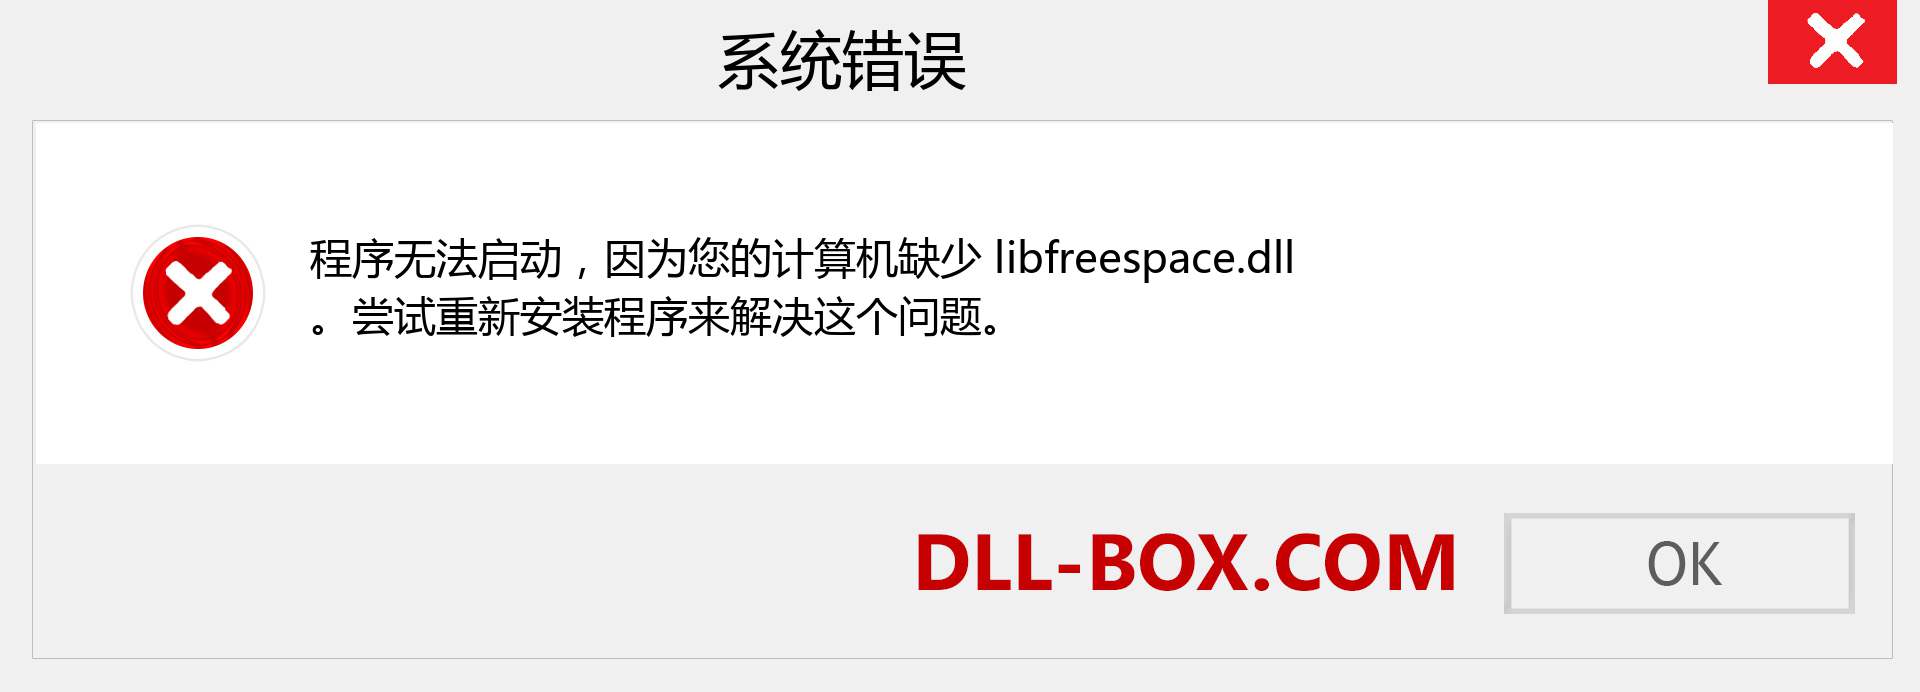 libfreespace.dll 文件丢失？。 适用于 Windows 7、8、10 的下载 - 修复 Windows、照片、图像上的 libfreespace dll 丢失错误